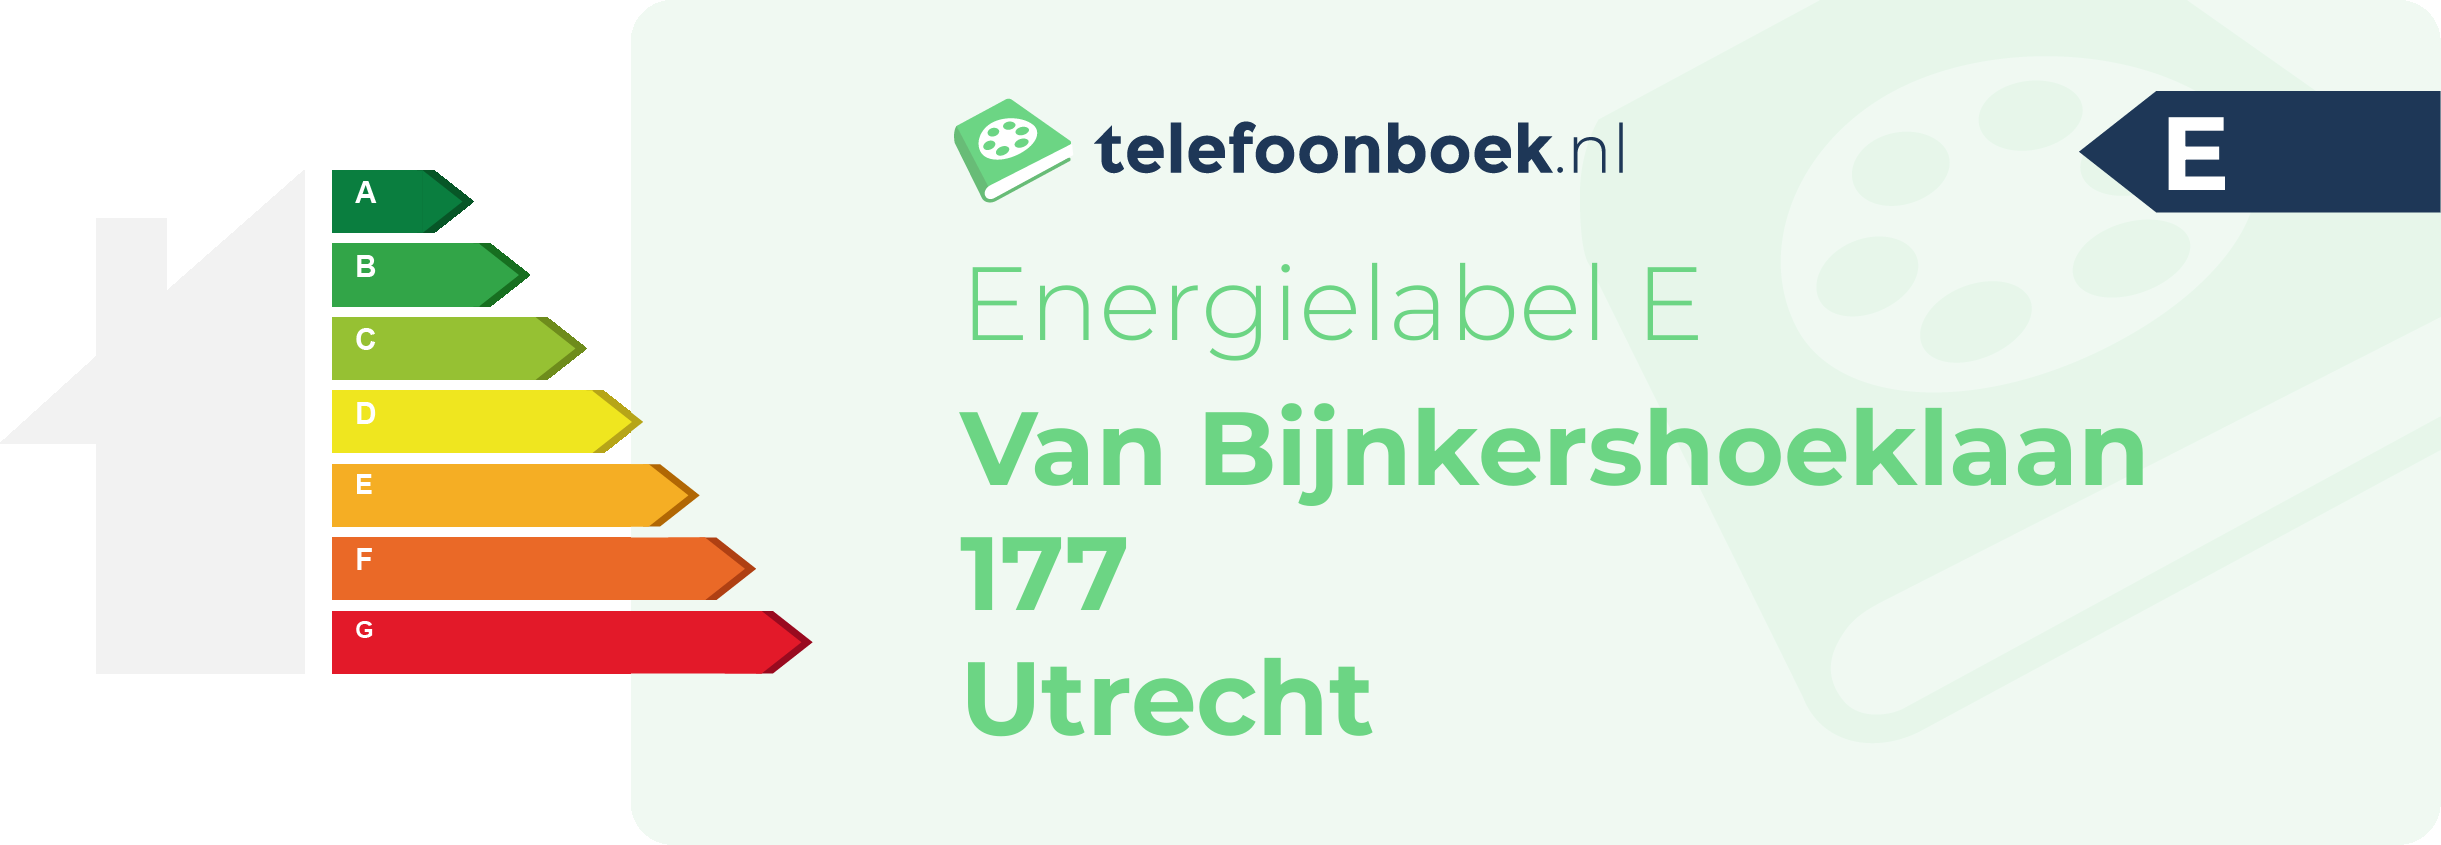 Energielabel Van Bijnkershoeklaan 177 Utrecht